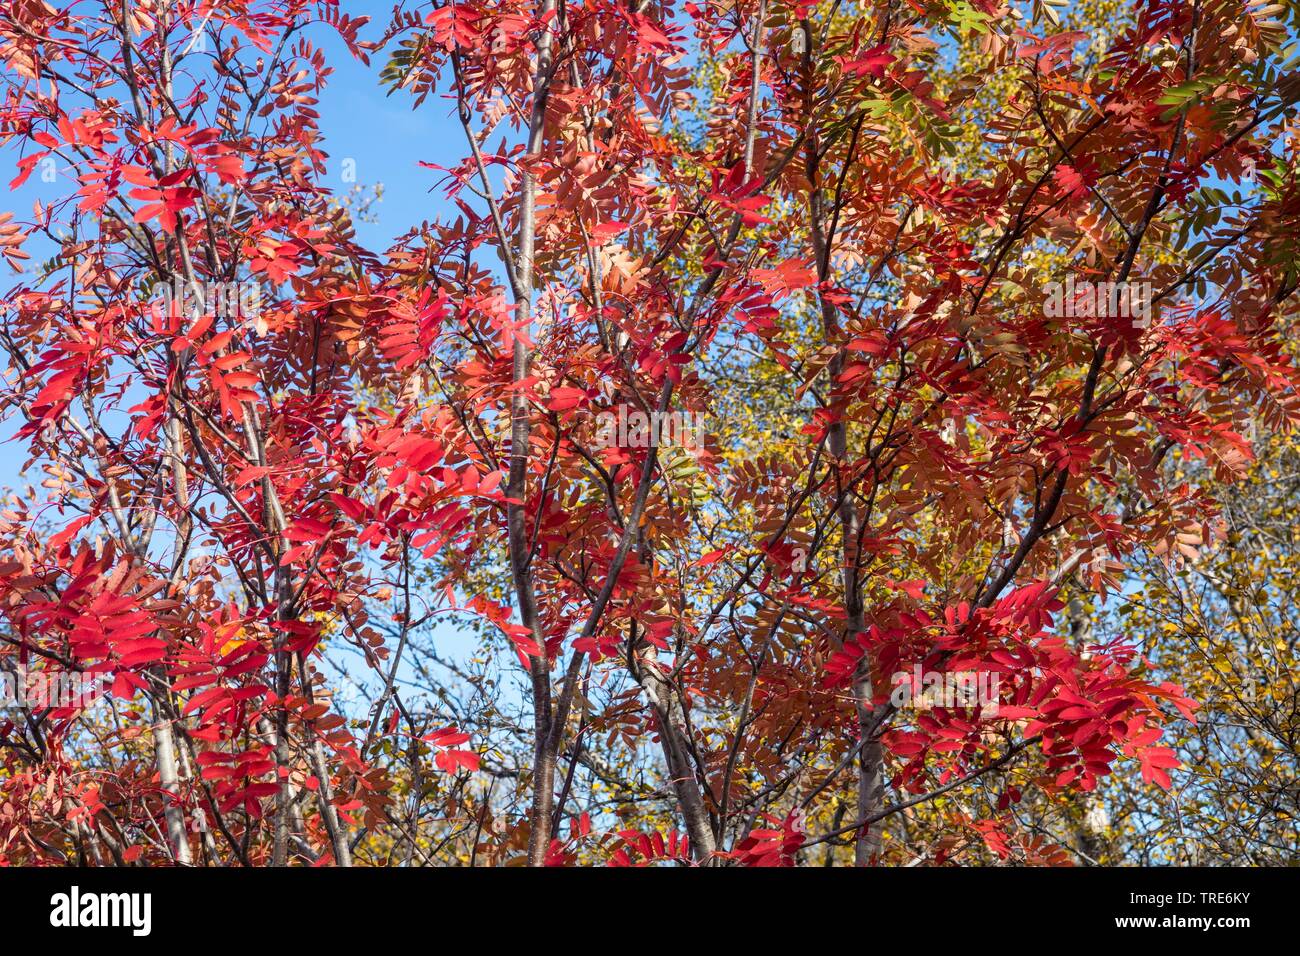 European mountain-ash, rowan tree (Sorbus aucuparia), with autumn colors, Iceland Stock Photo